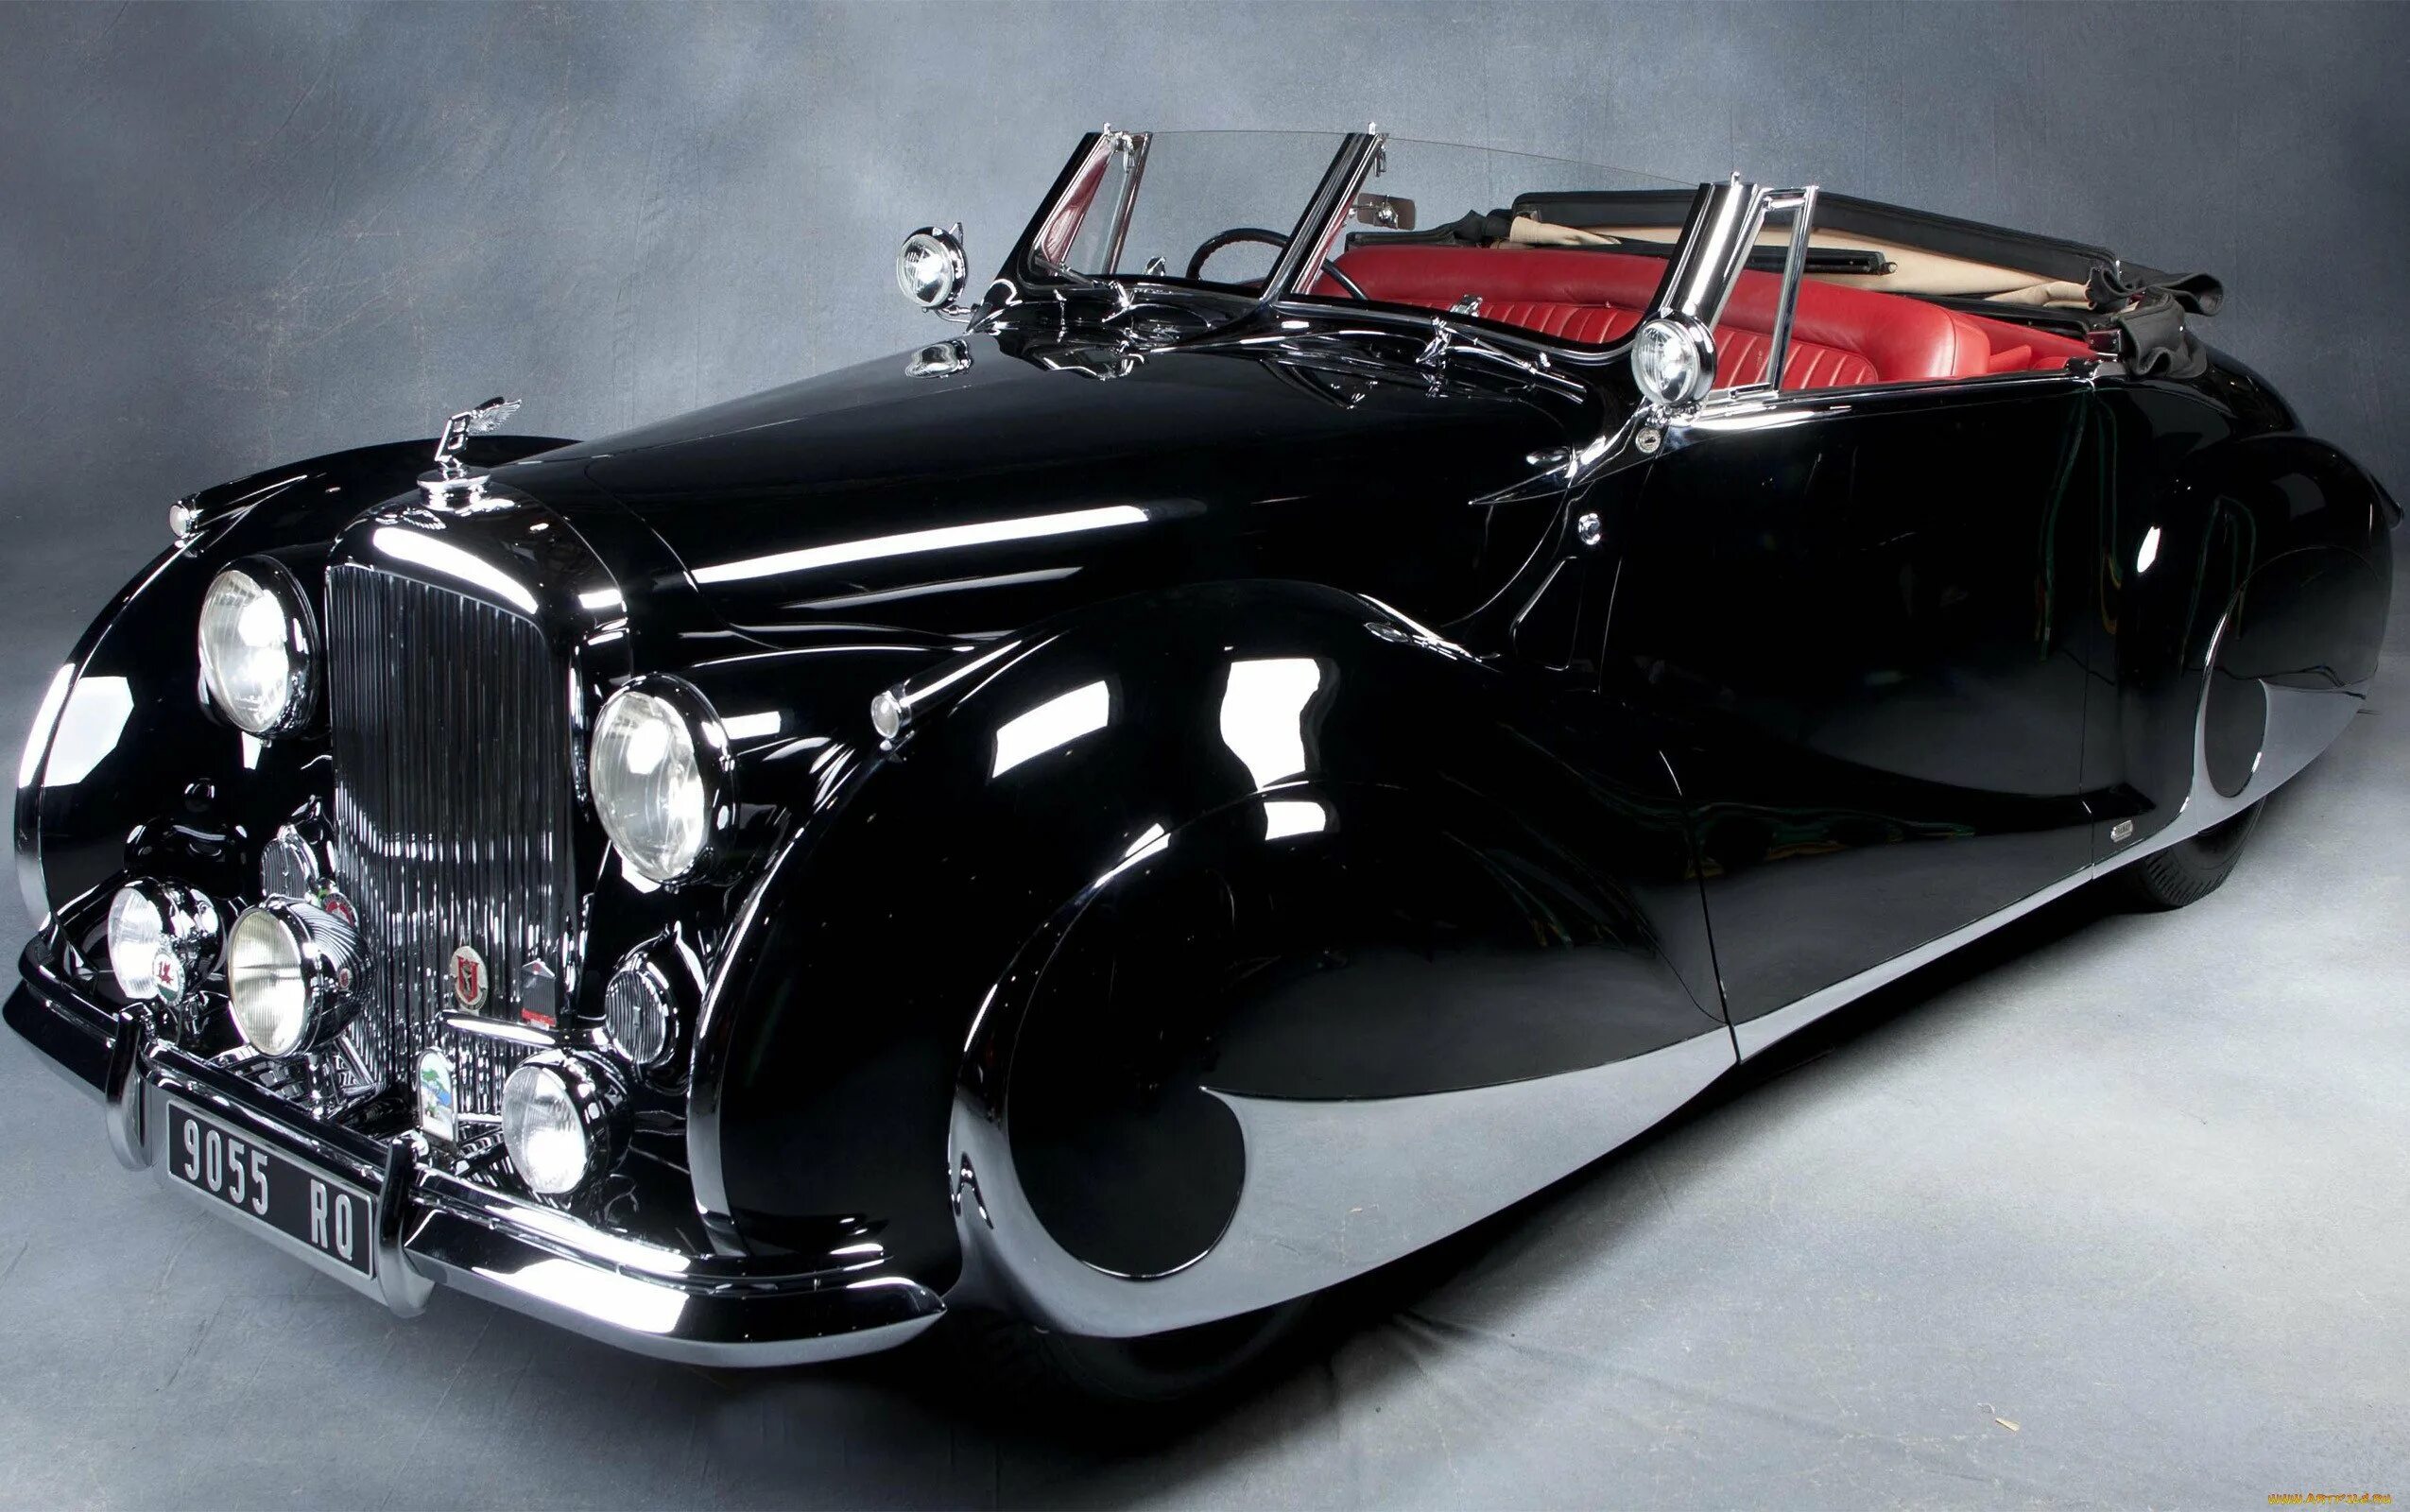 Дорогой старый автомобиль. 1947 Bentley Mark vi Franay Cabriolet. Роллс Ройс 1947. Bentley Mark vi Drophead Coupe by Franay 1947. Роллс Ройс кабриолет ретро.